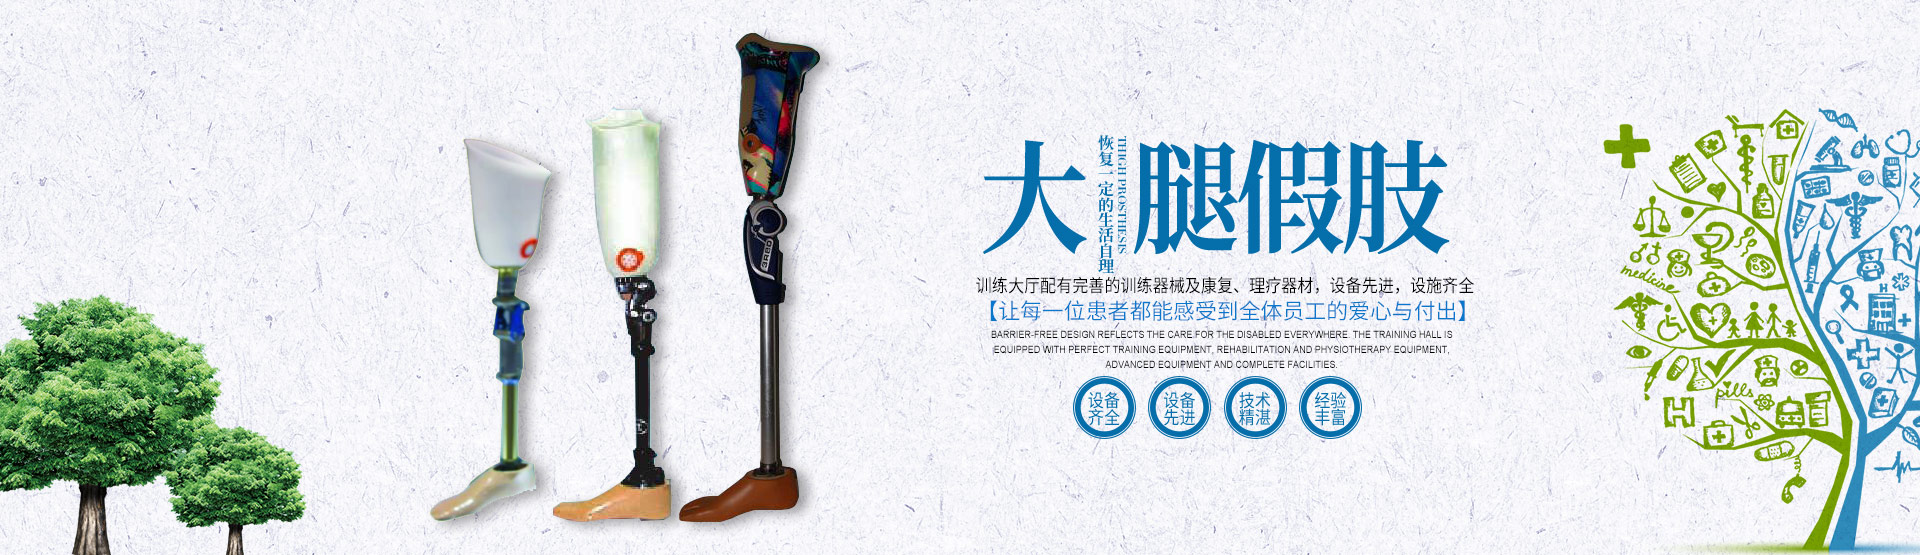 假肢义肢|矫形器辅助器具哪里好_长沙德诚精博义肢矫形康复器材有限公司